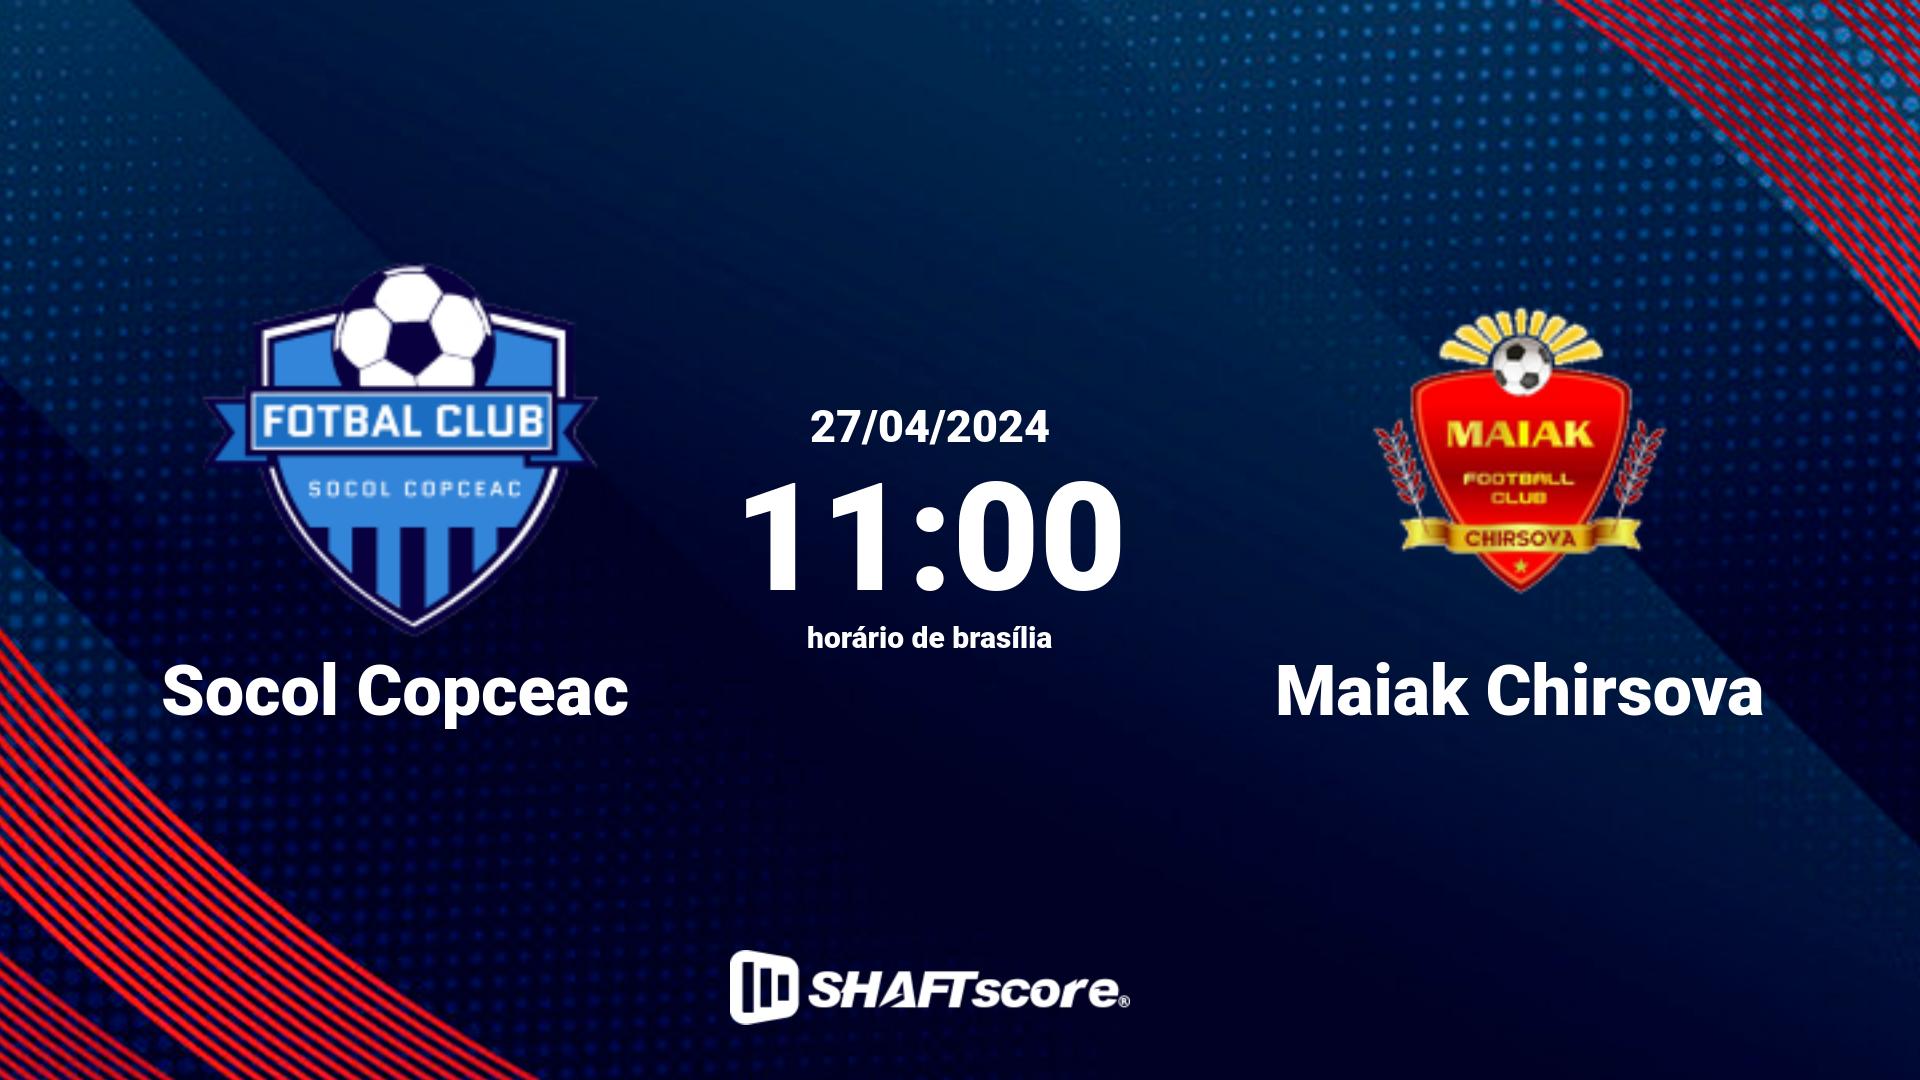 Estatísticas do jogo Socol Copceac vs Maiak Chirsova 27.04 11:00